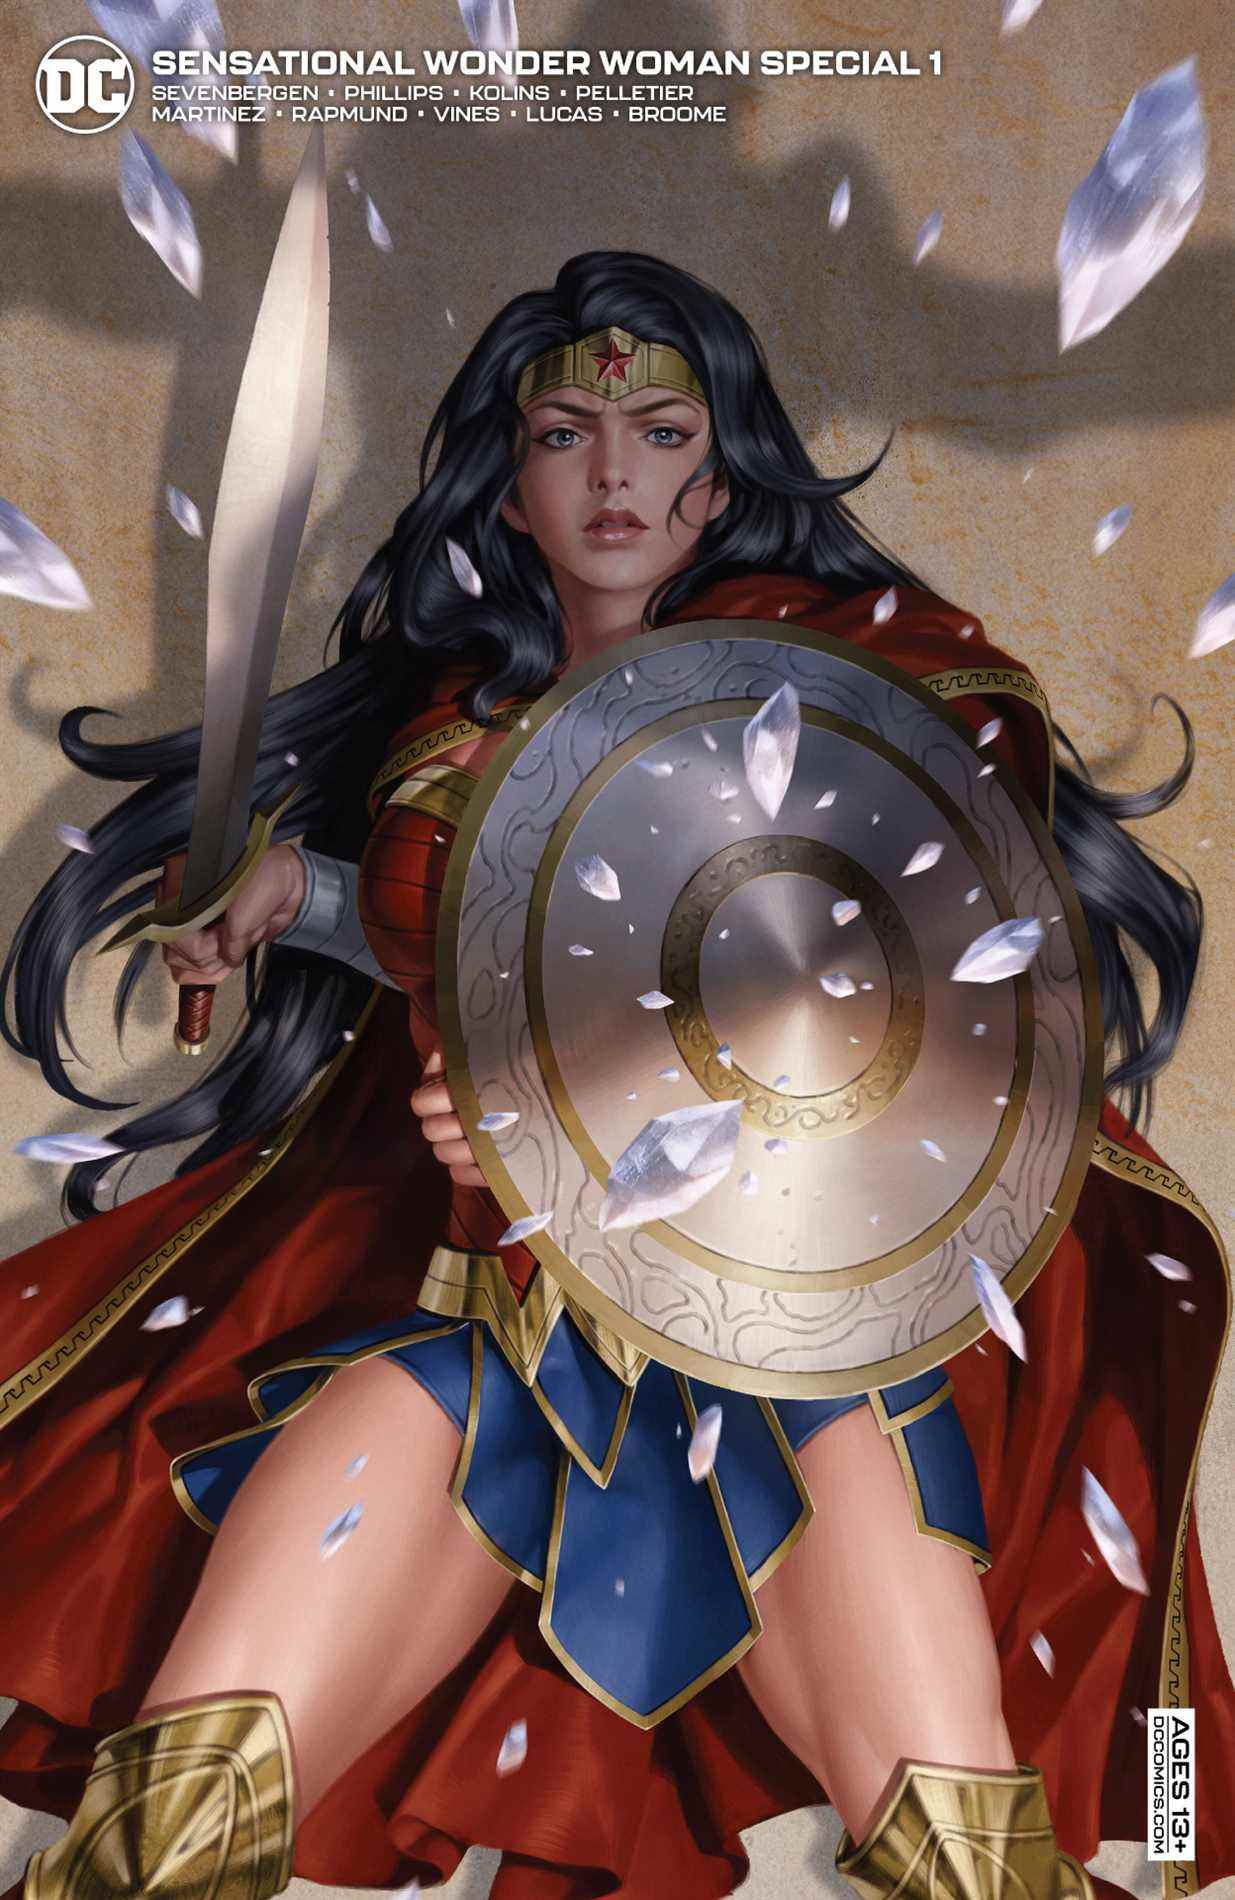 Sensationnel Wonder Woman spécial # 1